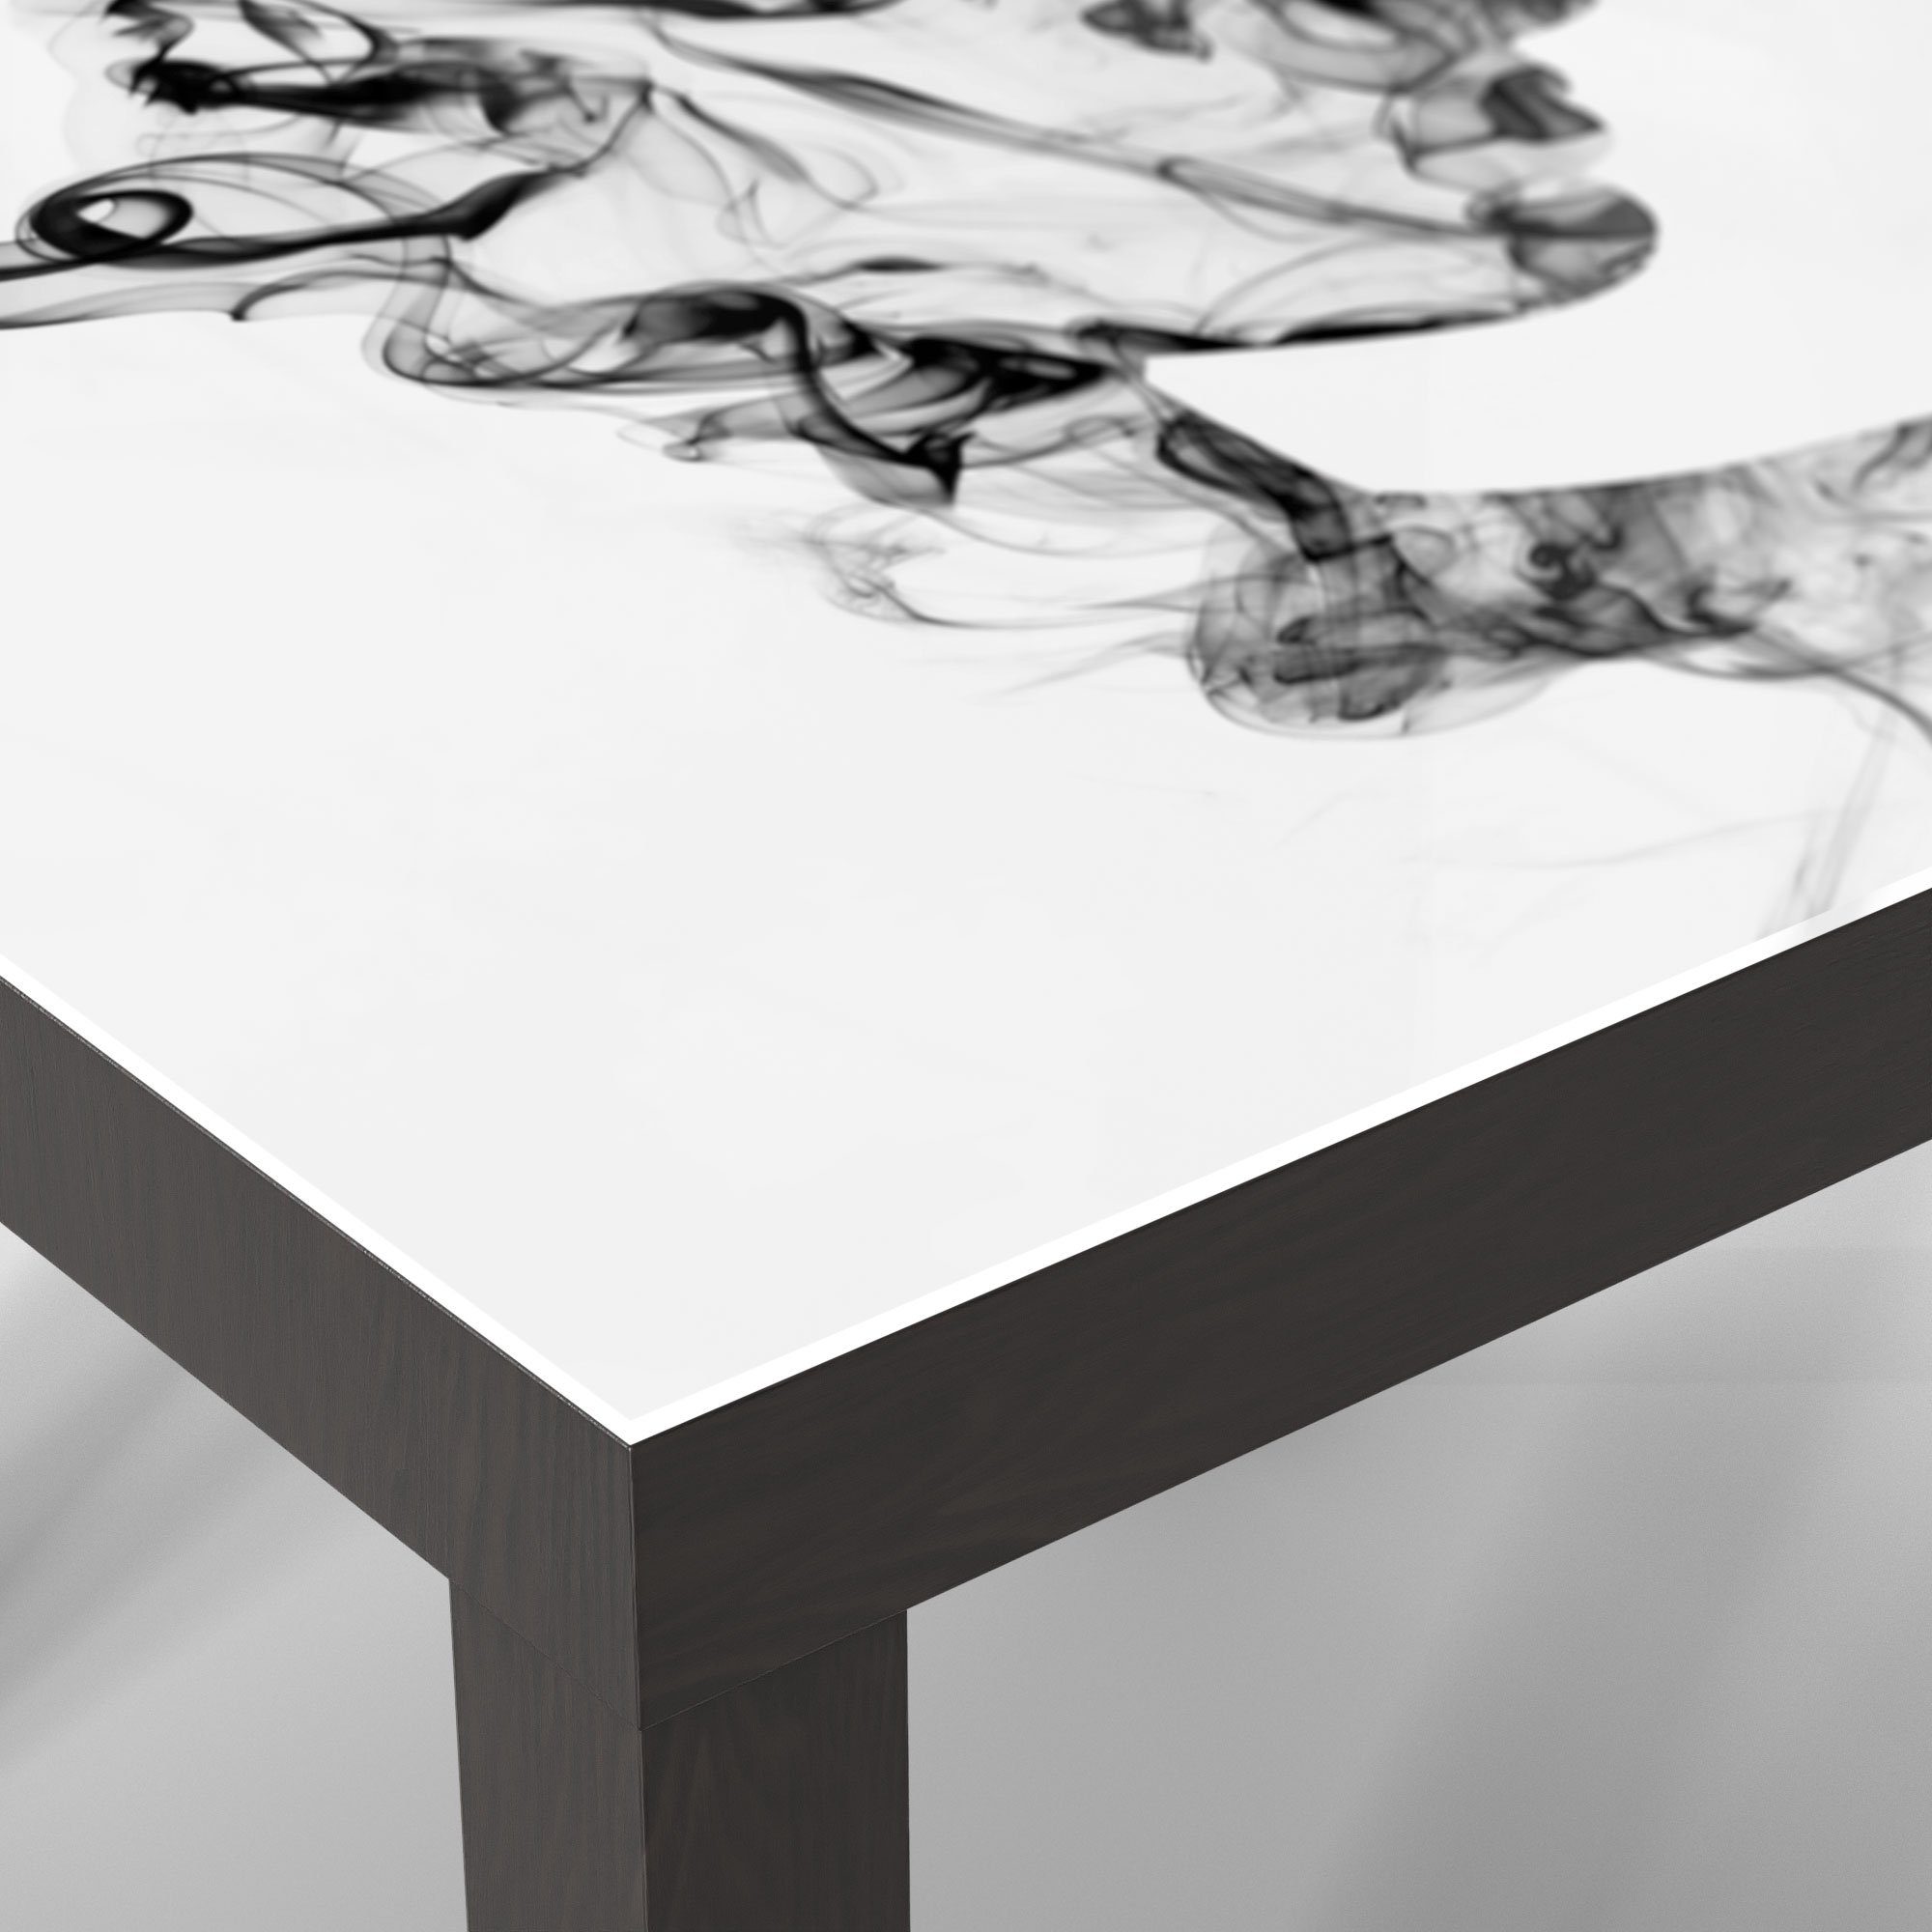 Couchtisch modern Glastisch Rauch', Beistelltisch Schwarz DEQORI 'Frauenkopf Glas aus